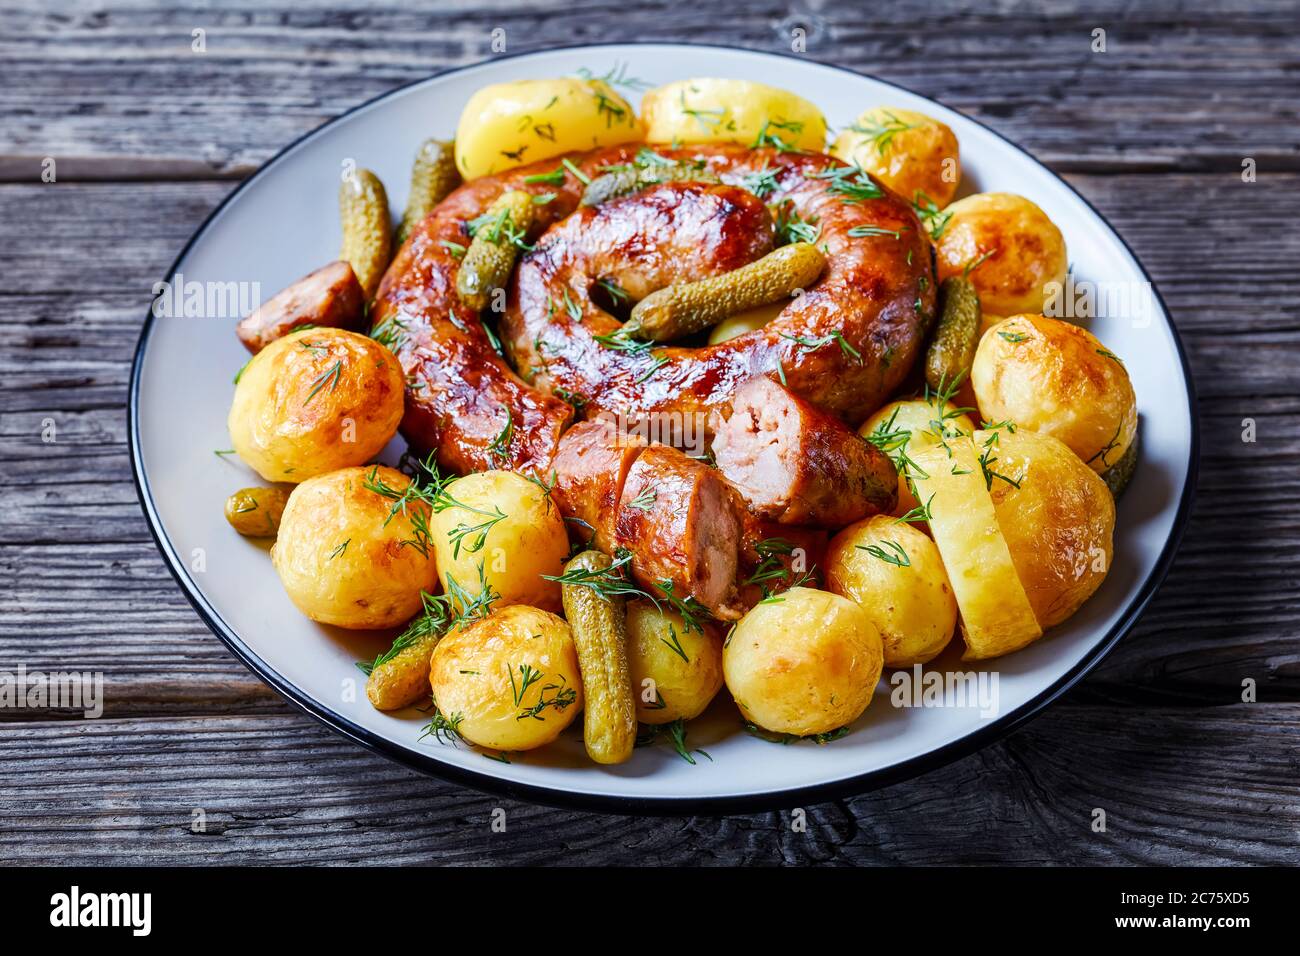 Altmodisches deutsches Gericht: Junge Kartoffeln gekocht und gebraten, serviert mit Schweinewurst und eingelegten Gurken, bestreut mit frischem Dill, serviert auf einem Teller Stockfoto